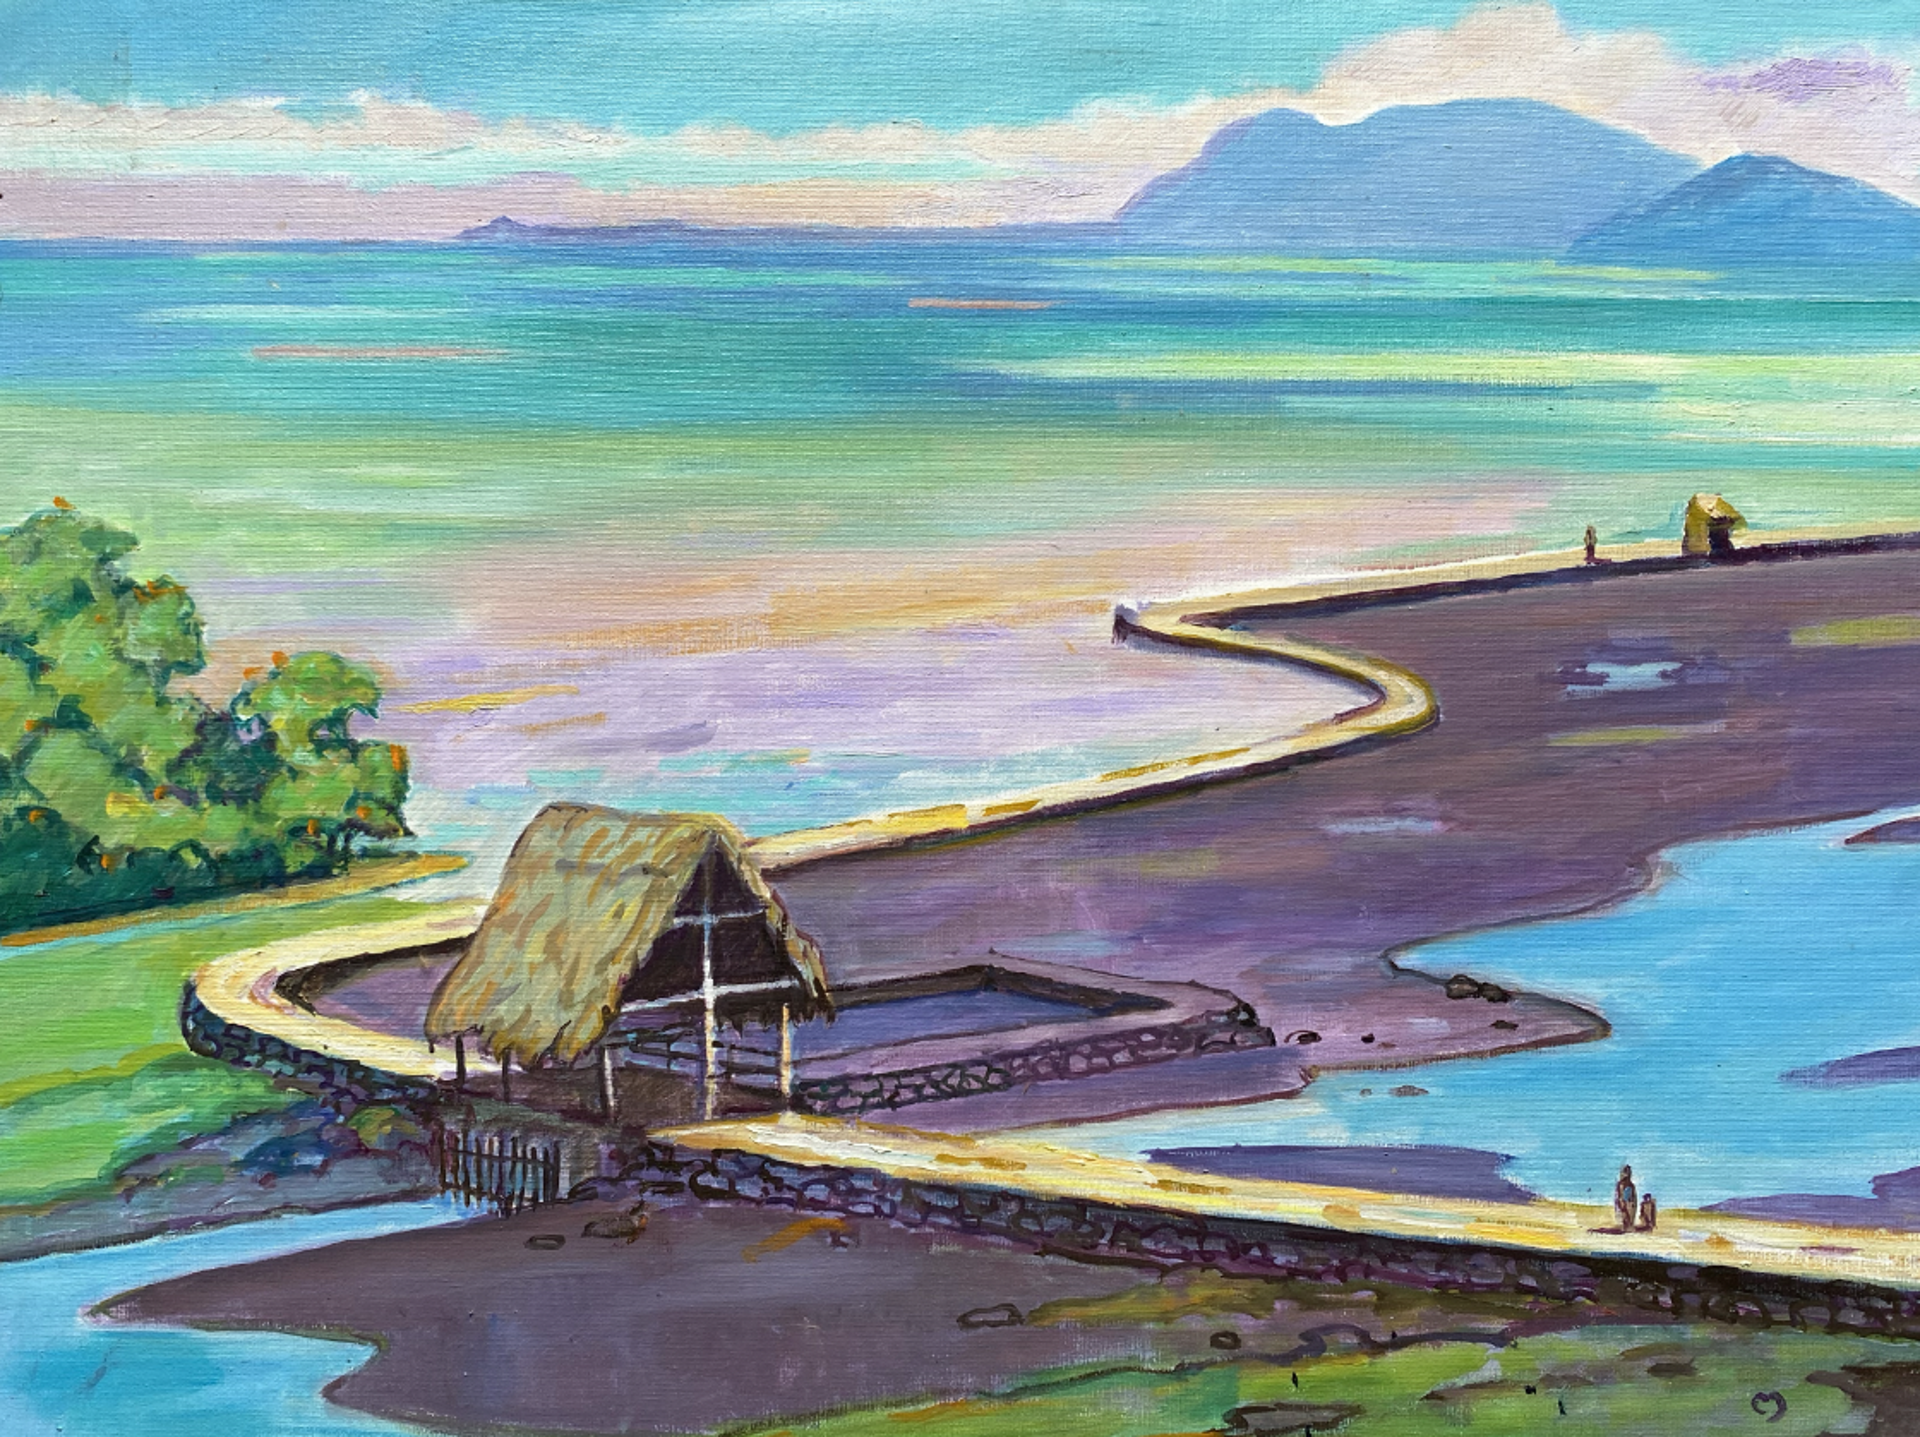 Mākaha Fishpond Heʻeia by Dennis Morton